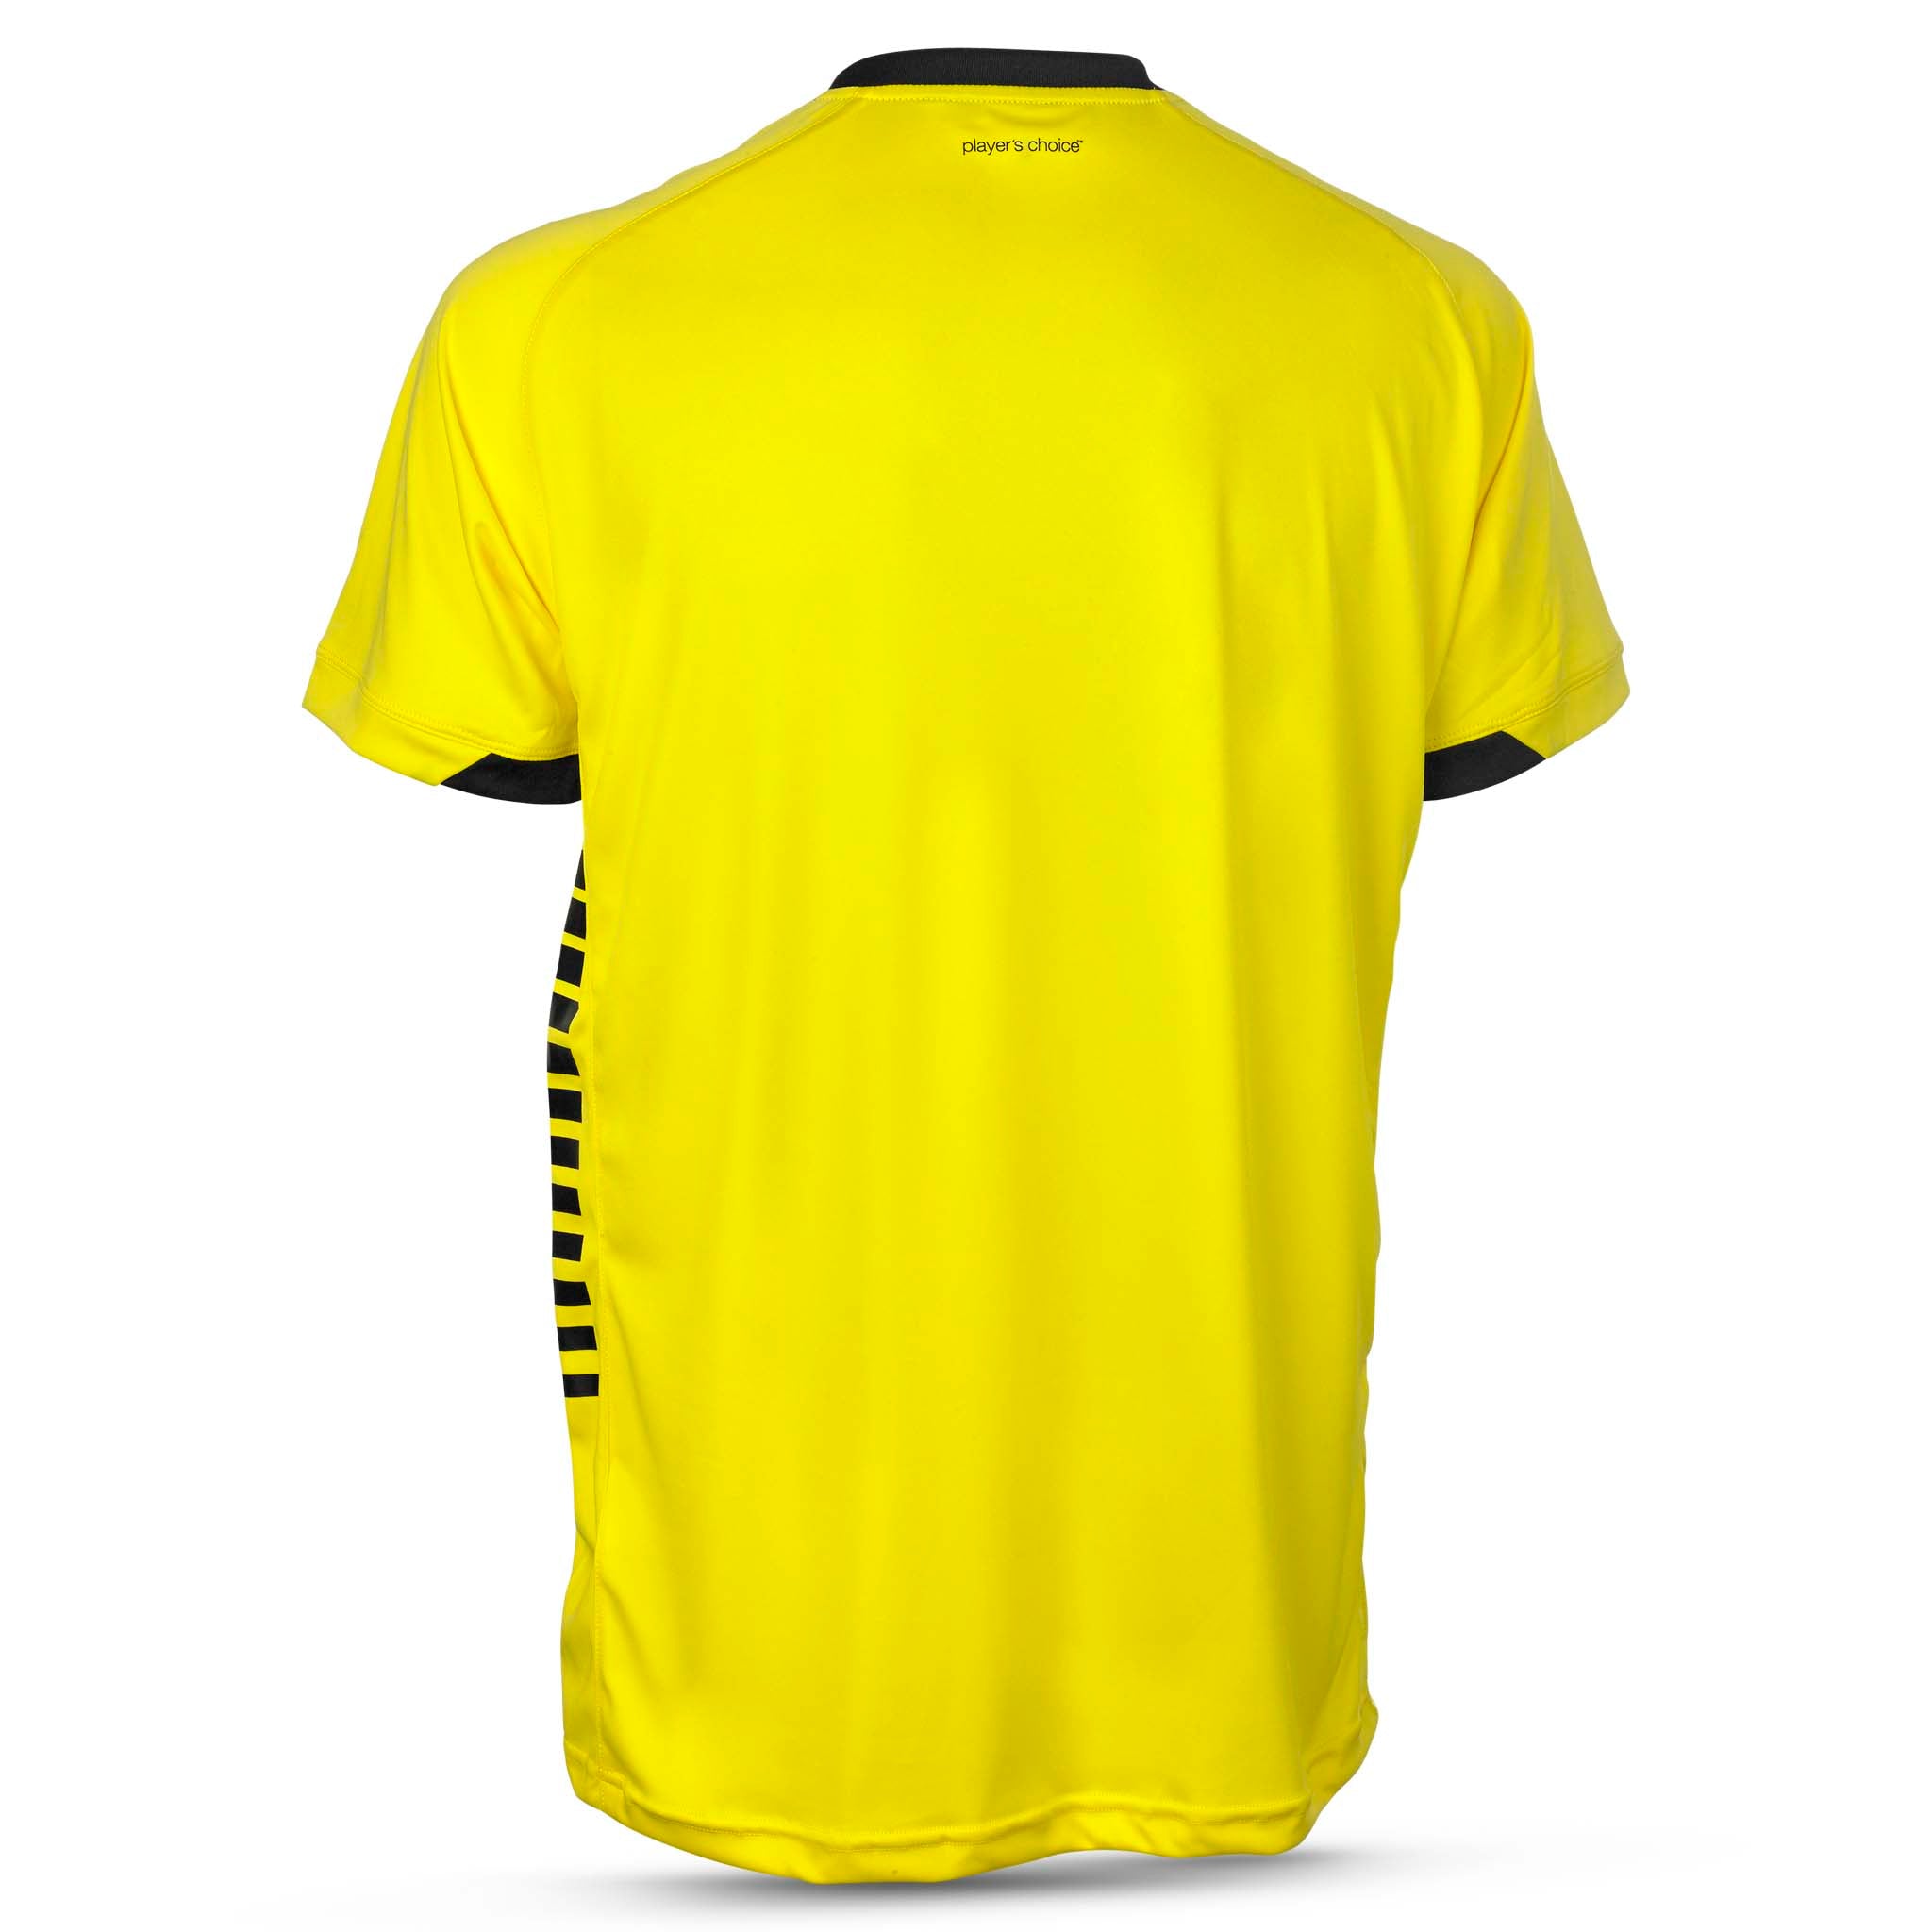 Spain Kortærmet spillertrøje #farve_ #farve_gul/sort #farve_gul/sort